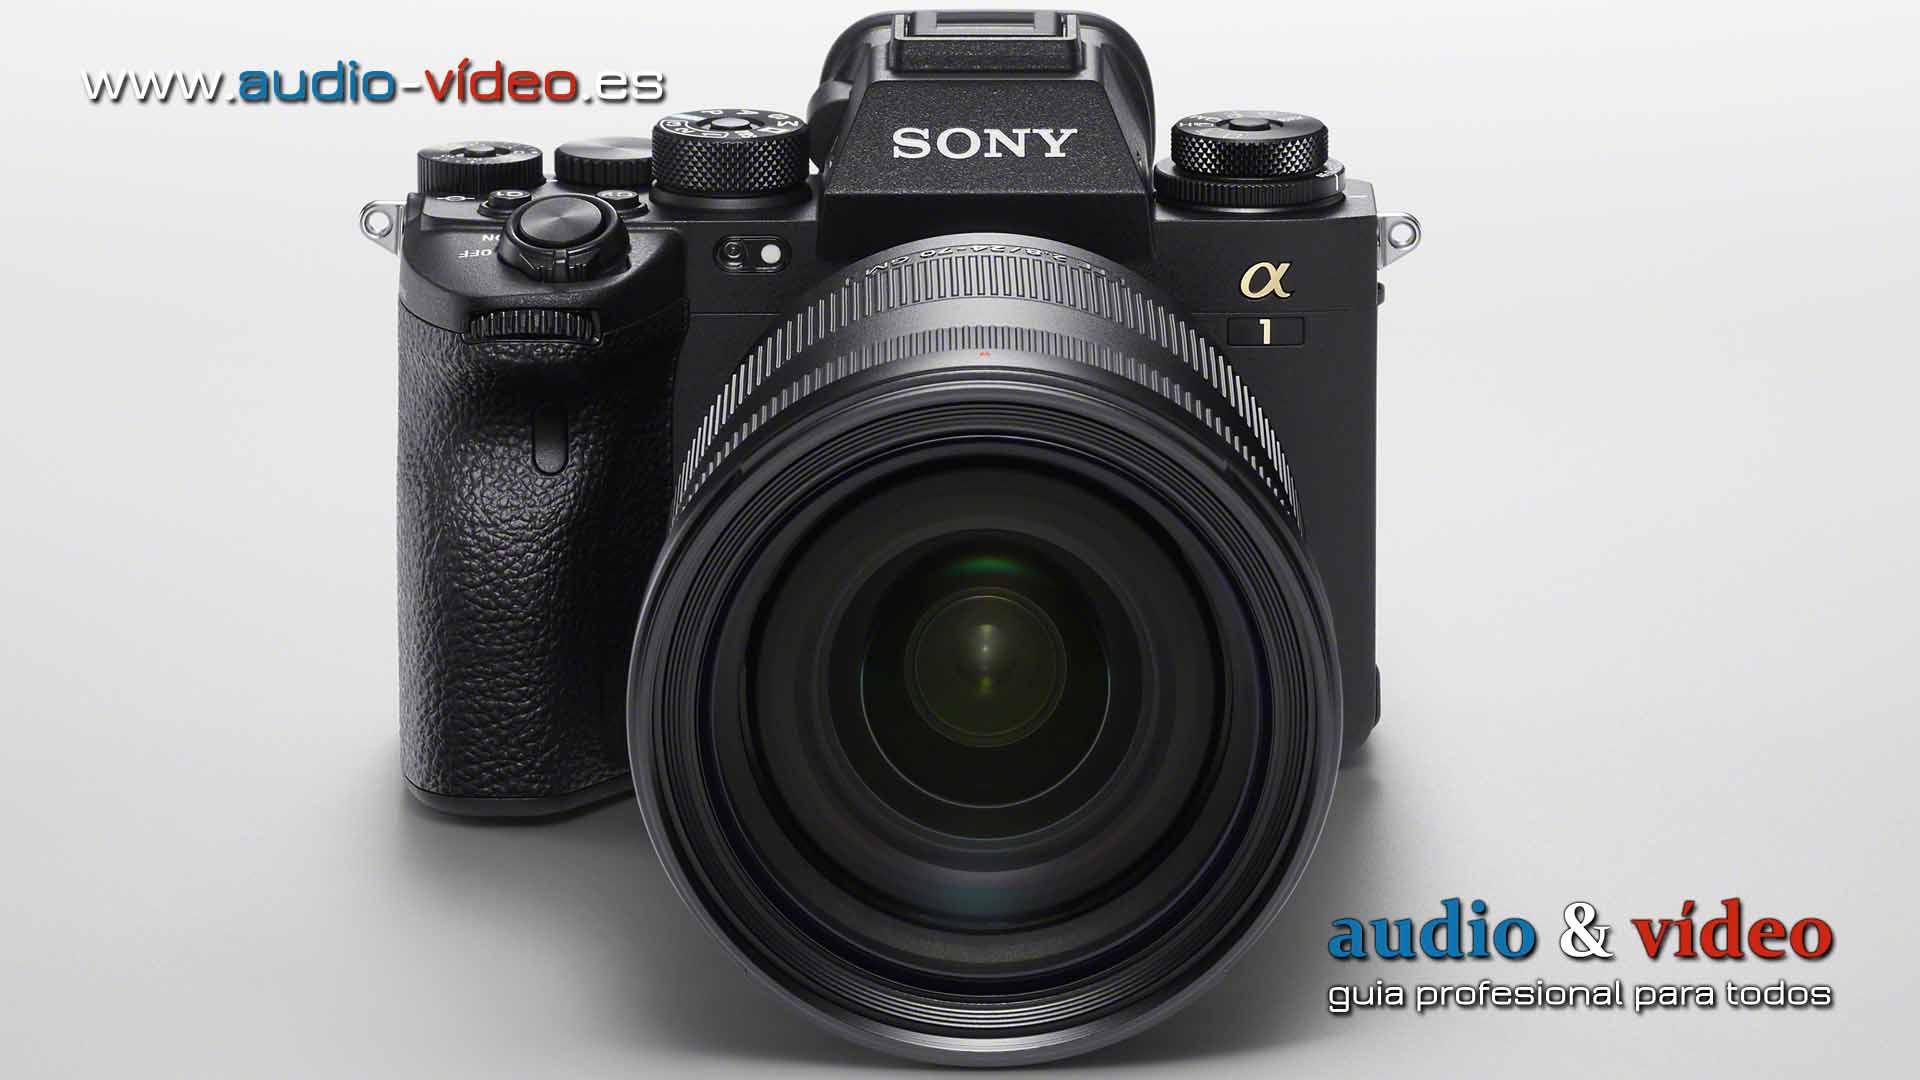 Cámara photo: Sony Alpha 1 marca una nueva era en la imagen profesional